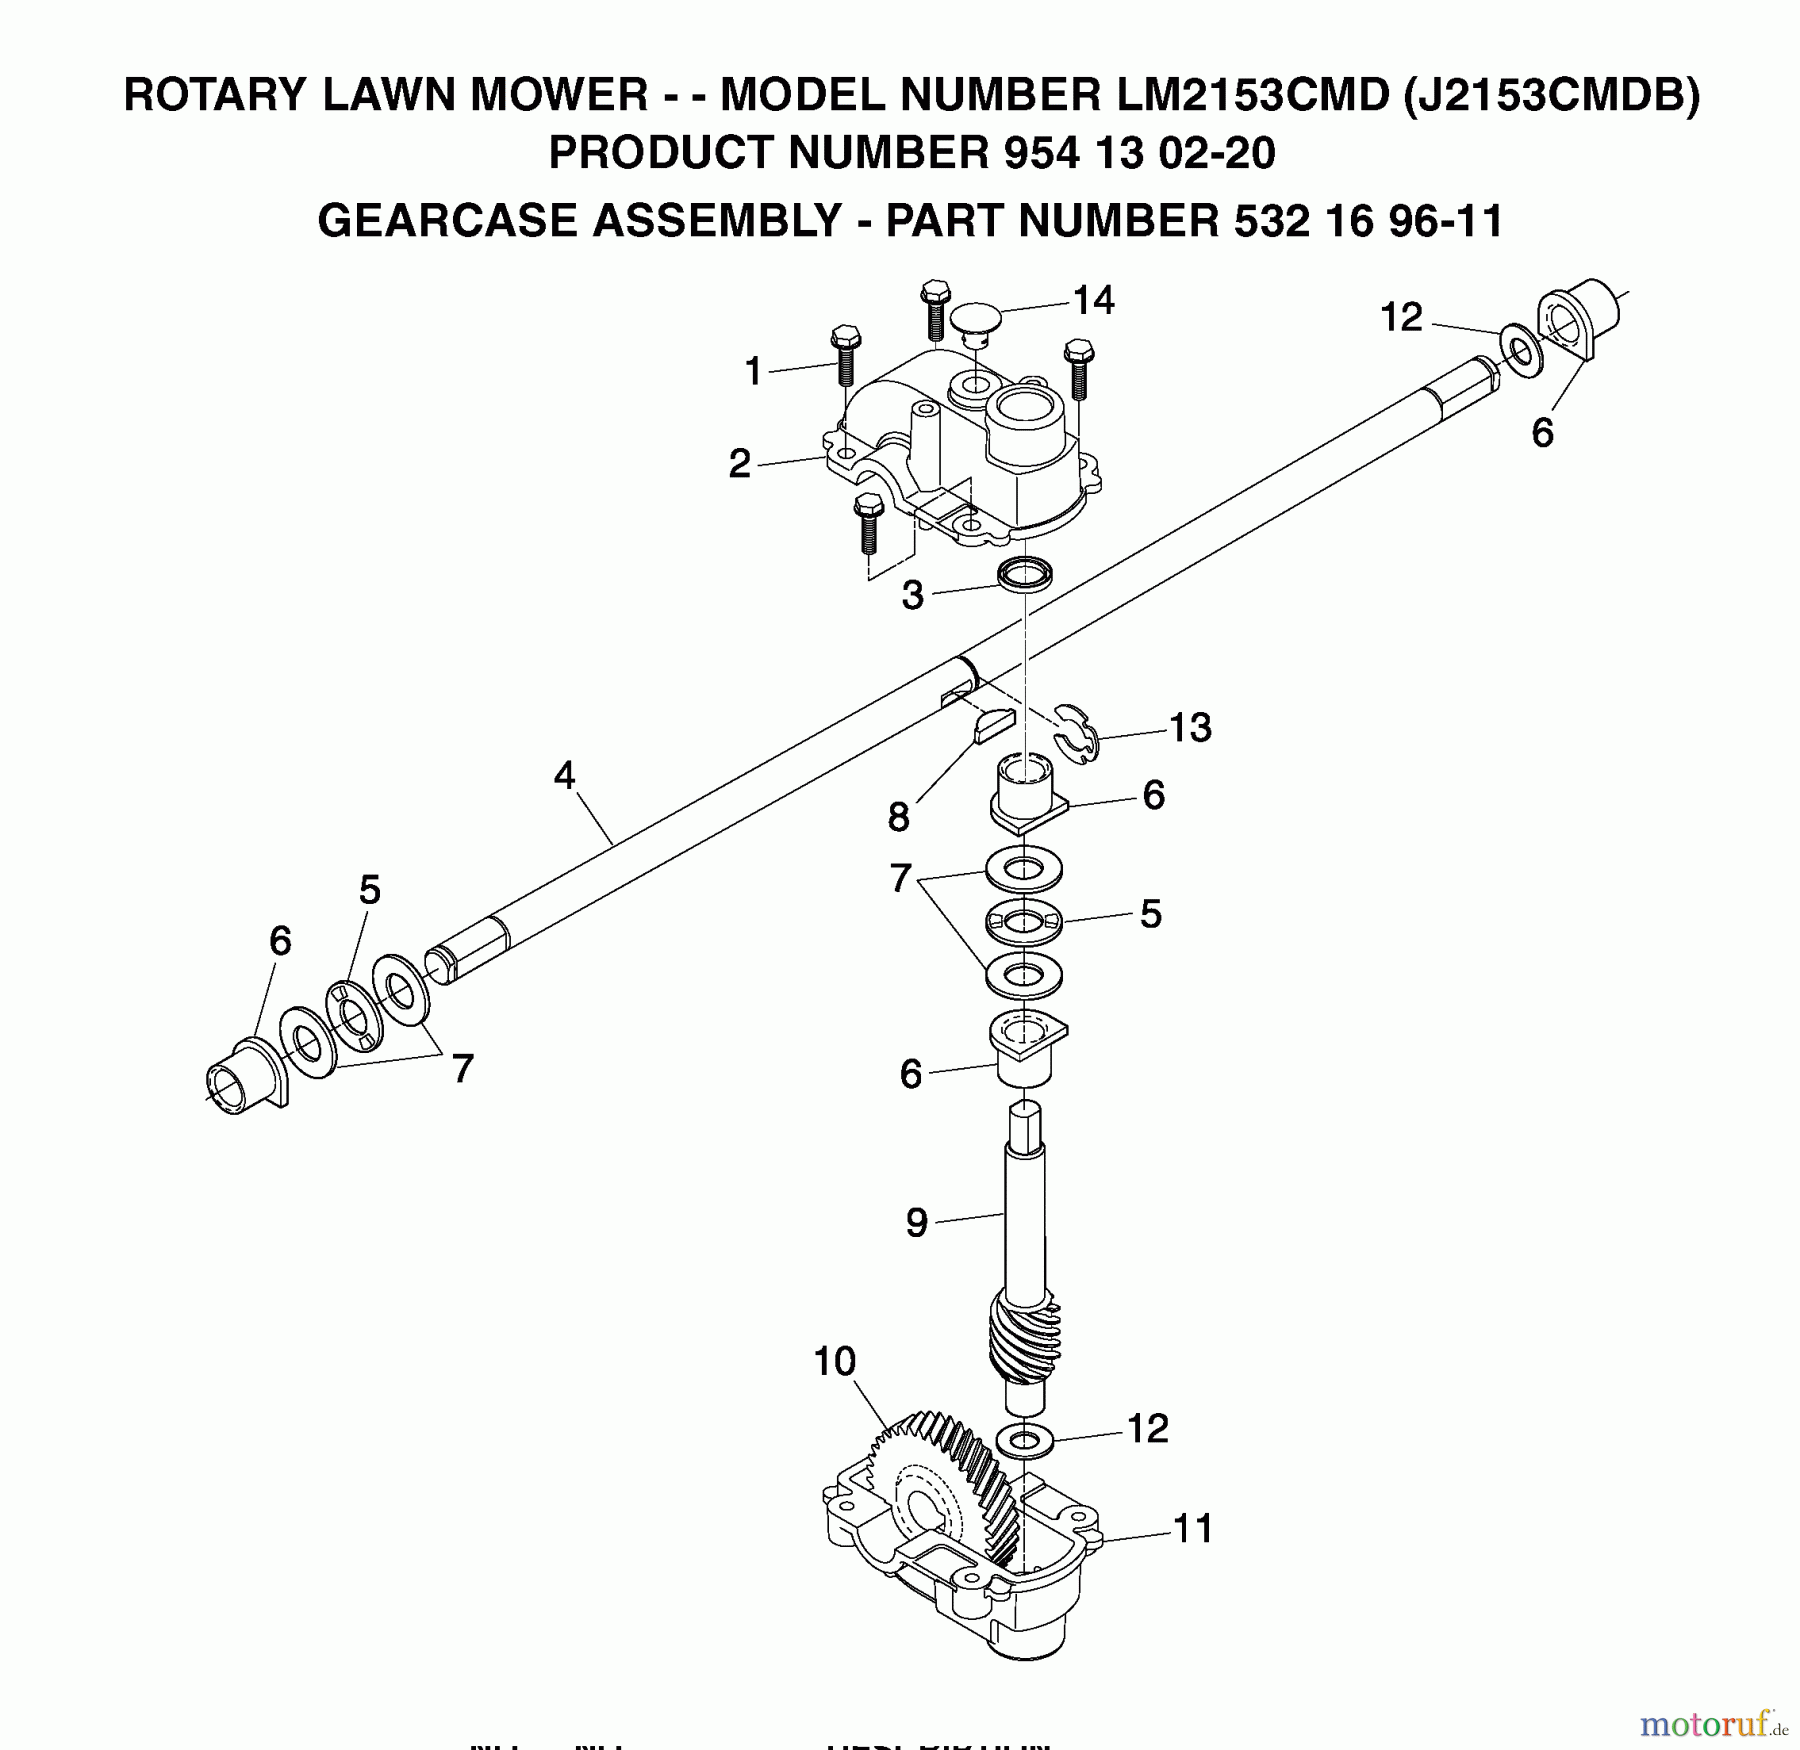  Jonsered Rasenmäher LM2153CMD (J2153CMDB, 954130220) - Jonsered Walk-Behind Mower (2004-01) GEAR CASE